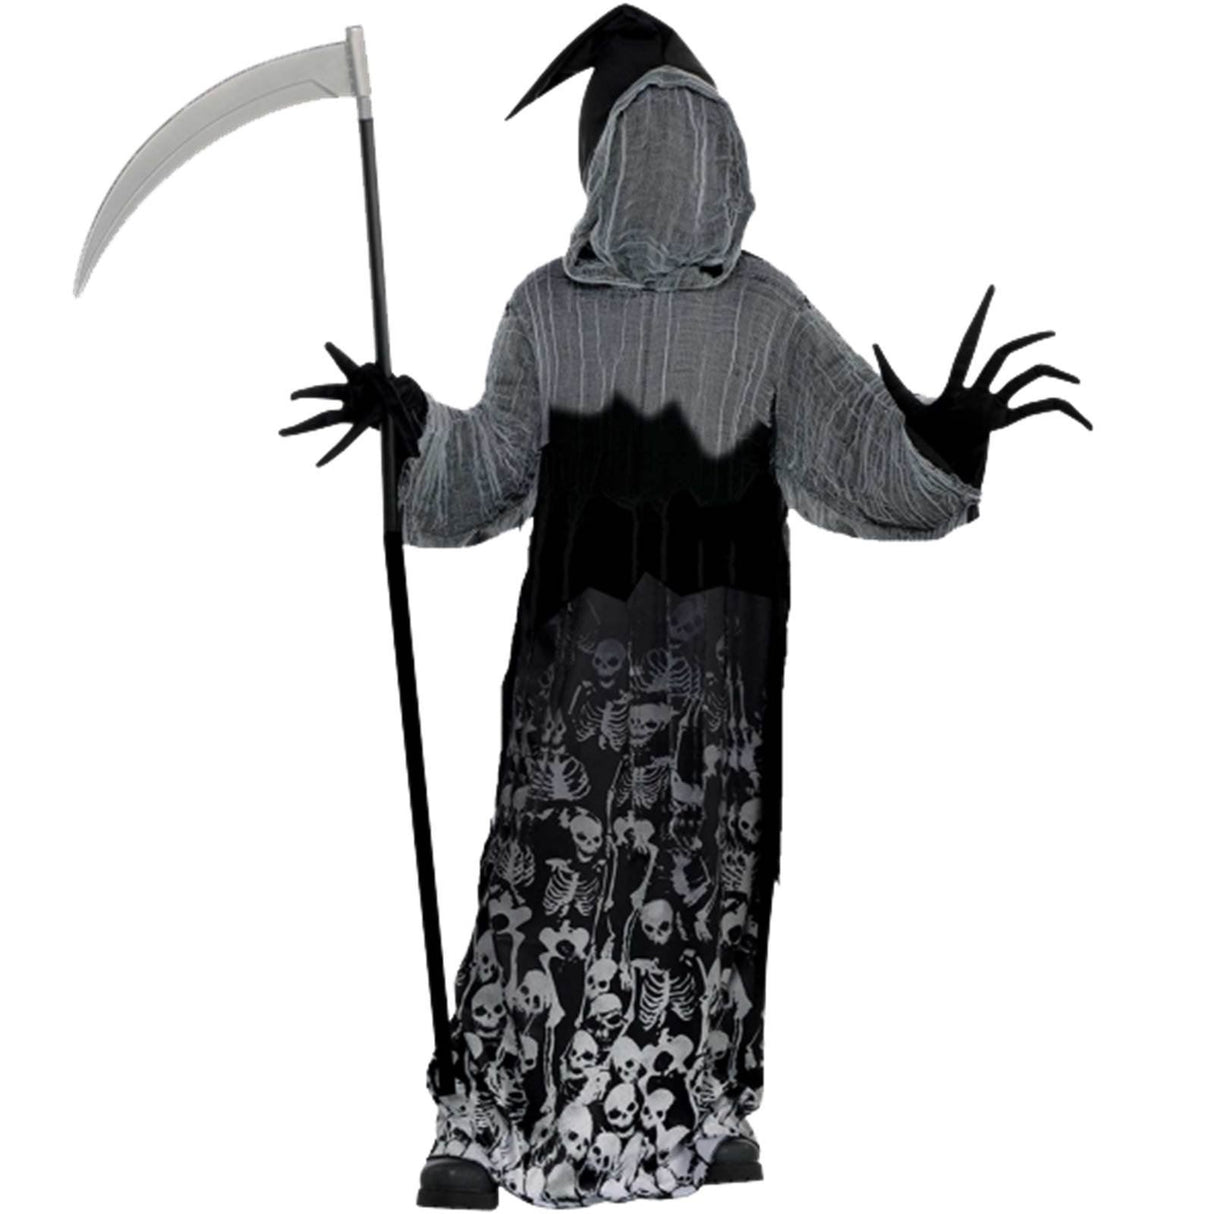 Teen Boys Dark Shadow Creeper Costume - 14-16 Years